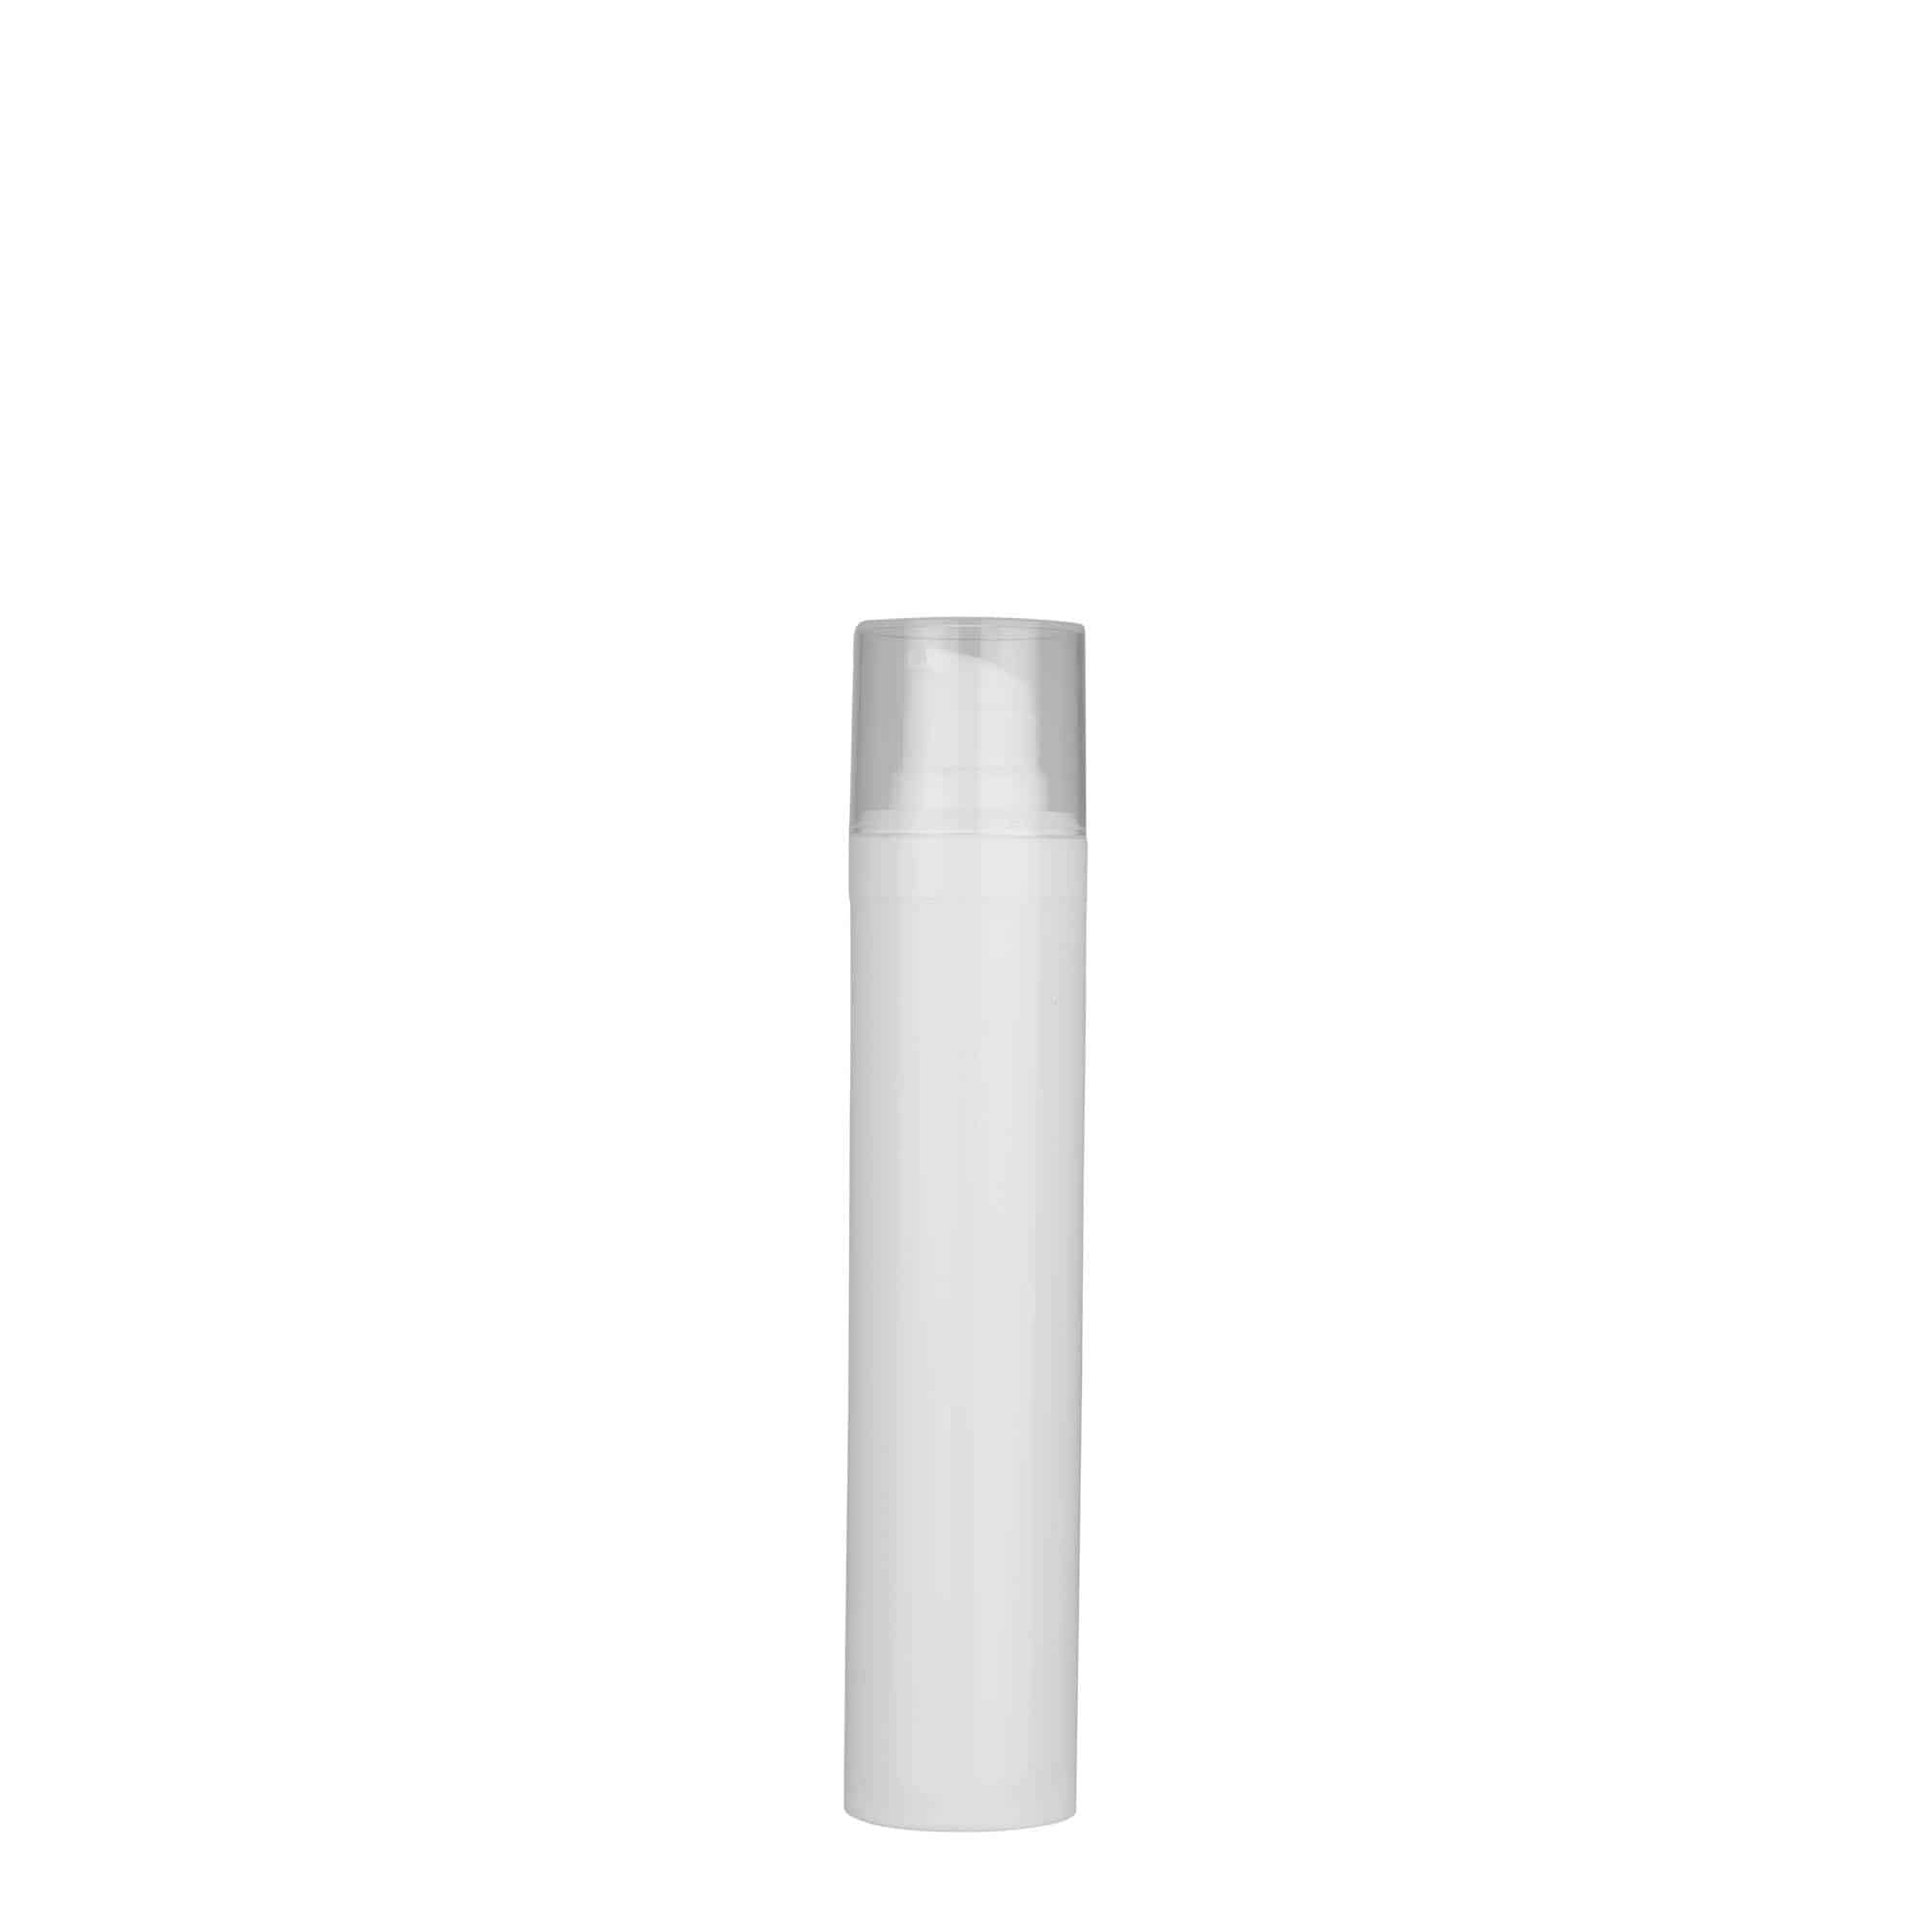 Bezvzduchový dávkovač 50 ml 'Micro', plast PP, bílý